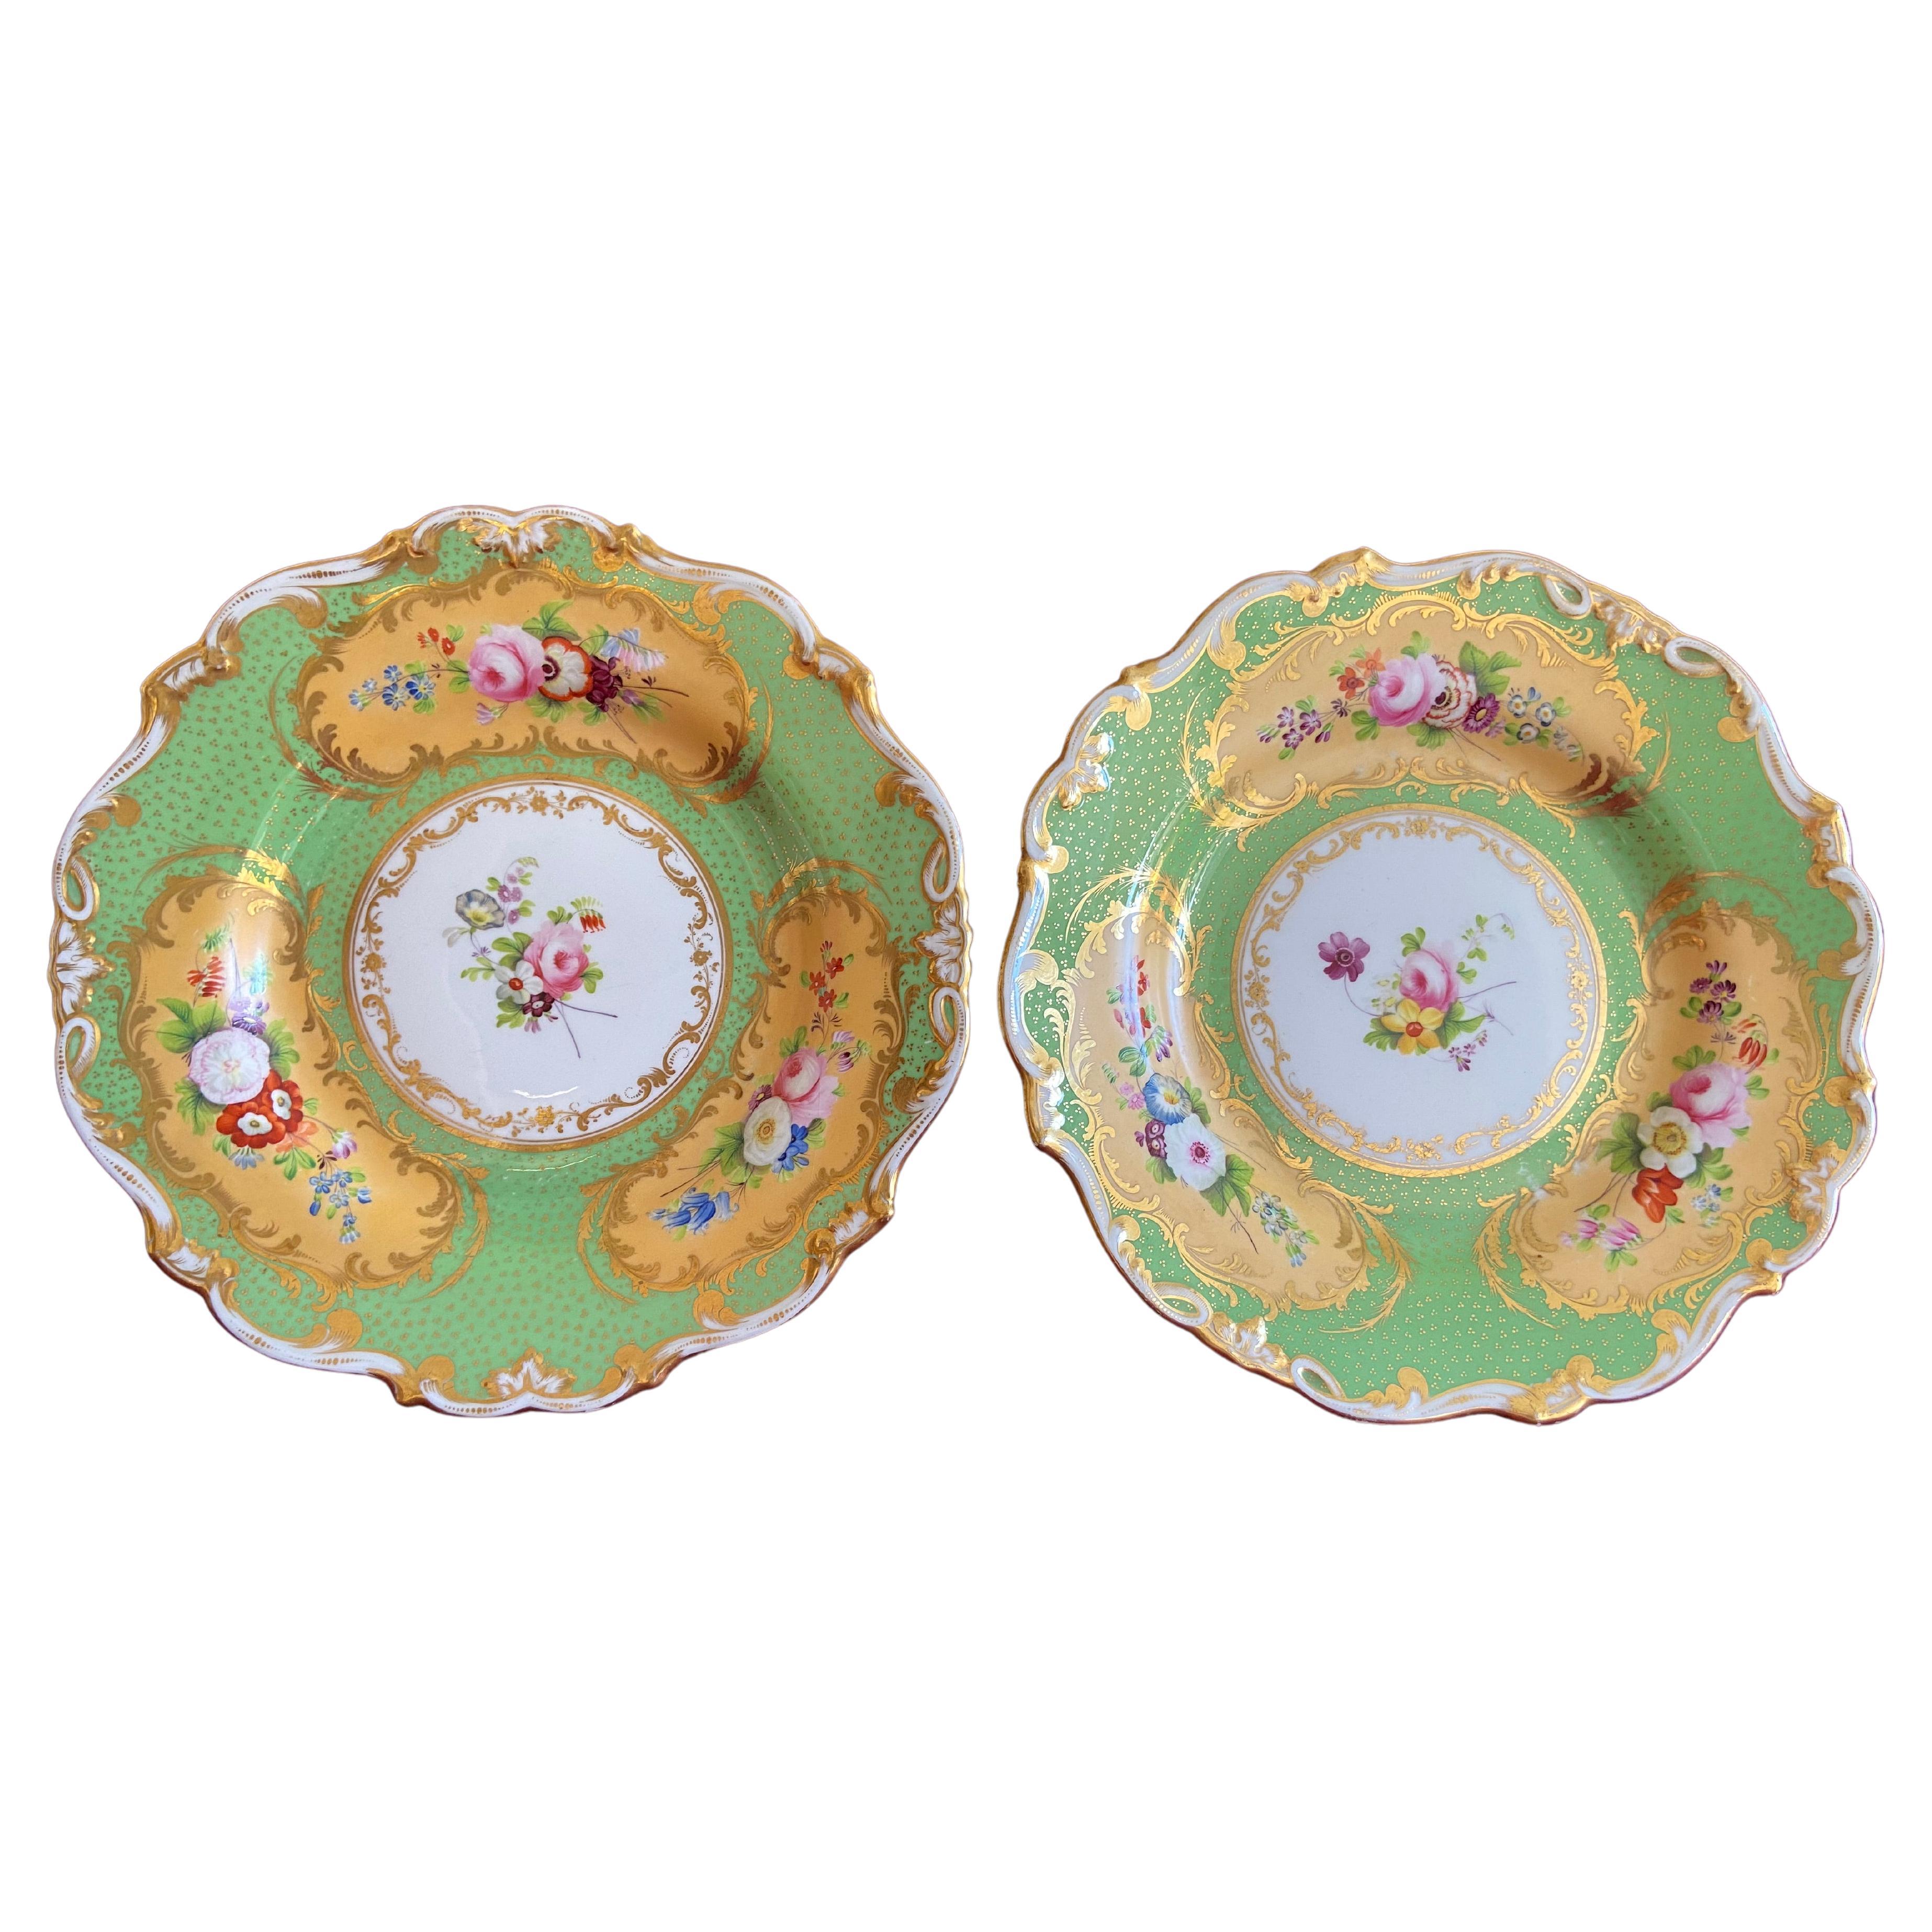 Fine Pair of Minton Porcelain Dessert Plates C.1835